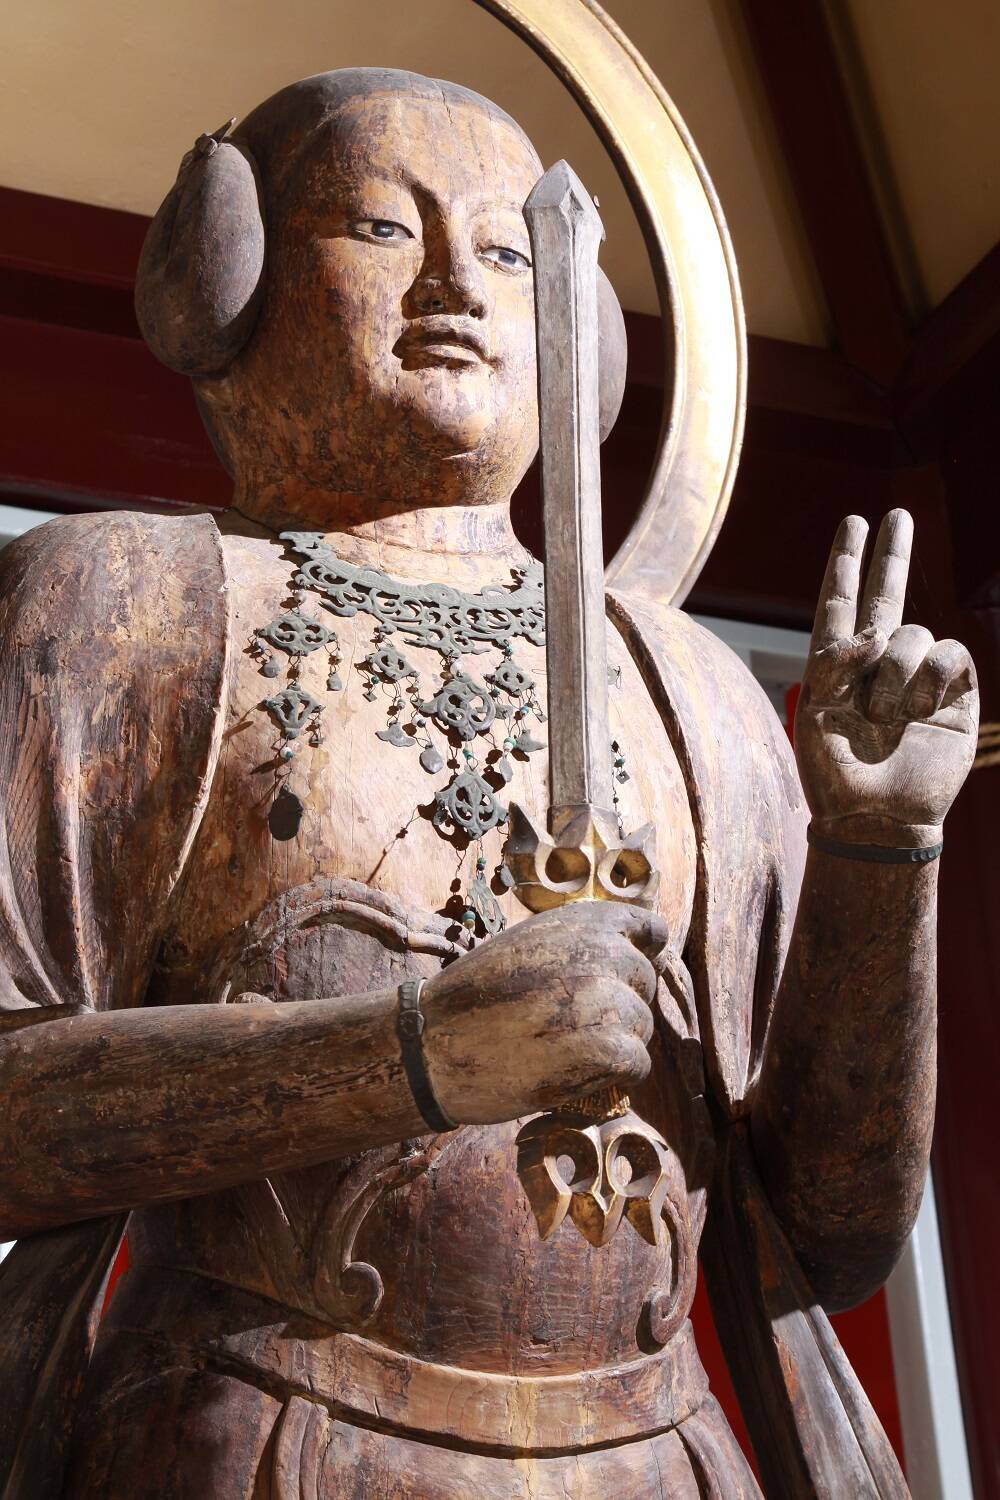 規格外の仏像が生まれた謎を紐解く「神仏探偵」